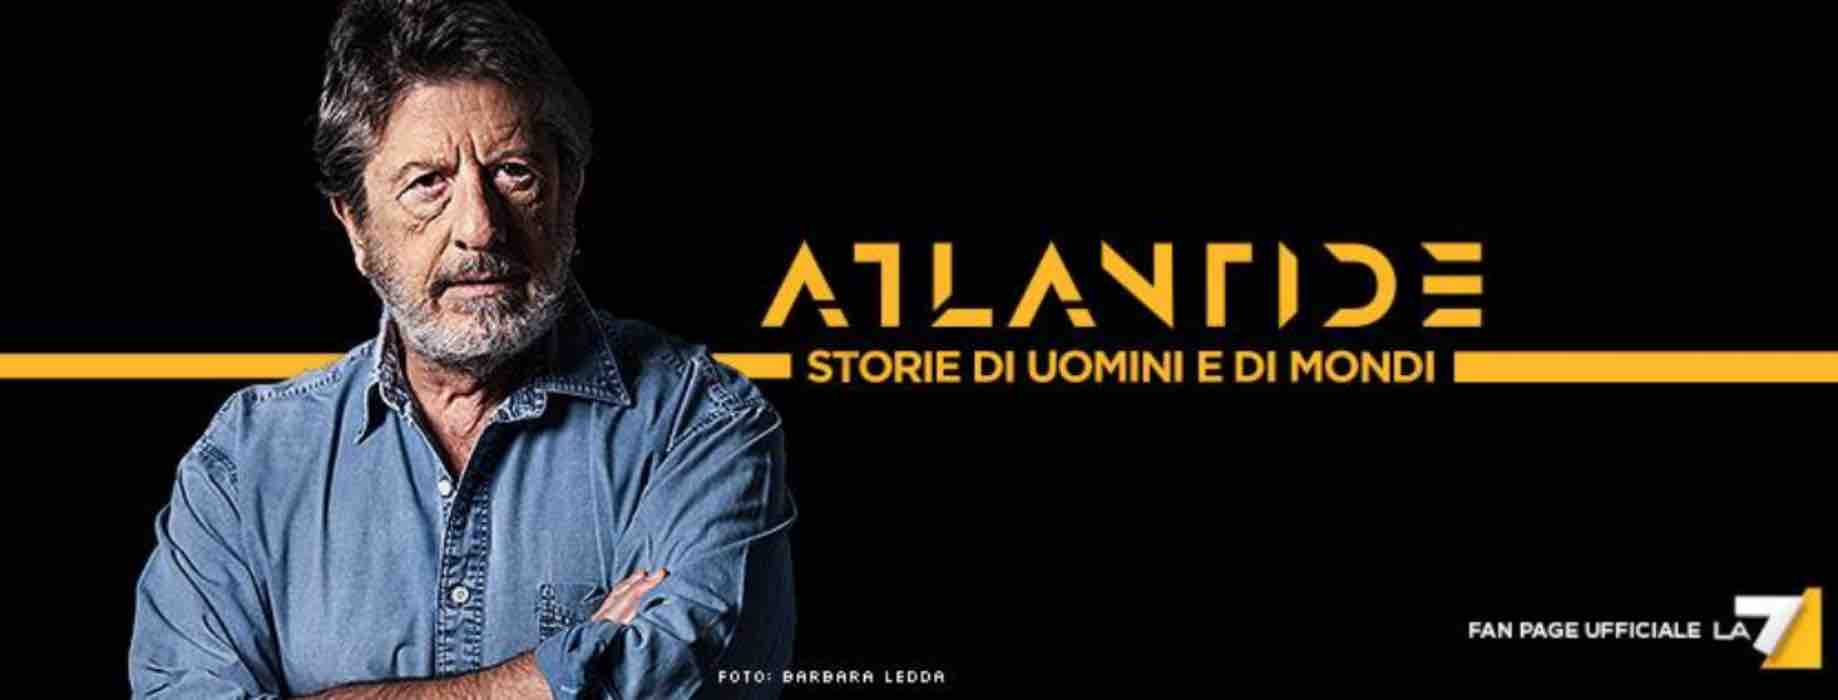 'Atlantide' stasera 11 maggio in tv: "Salviamo il Pianeta"